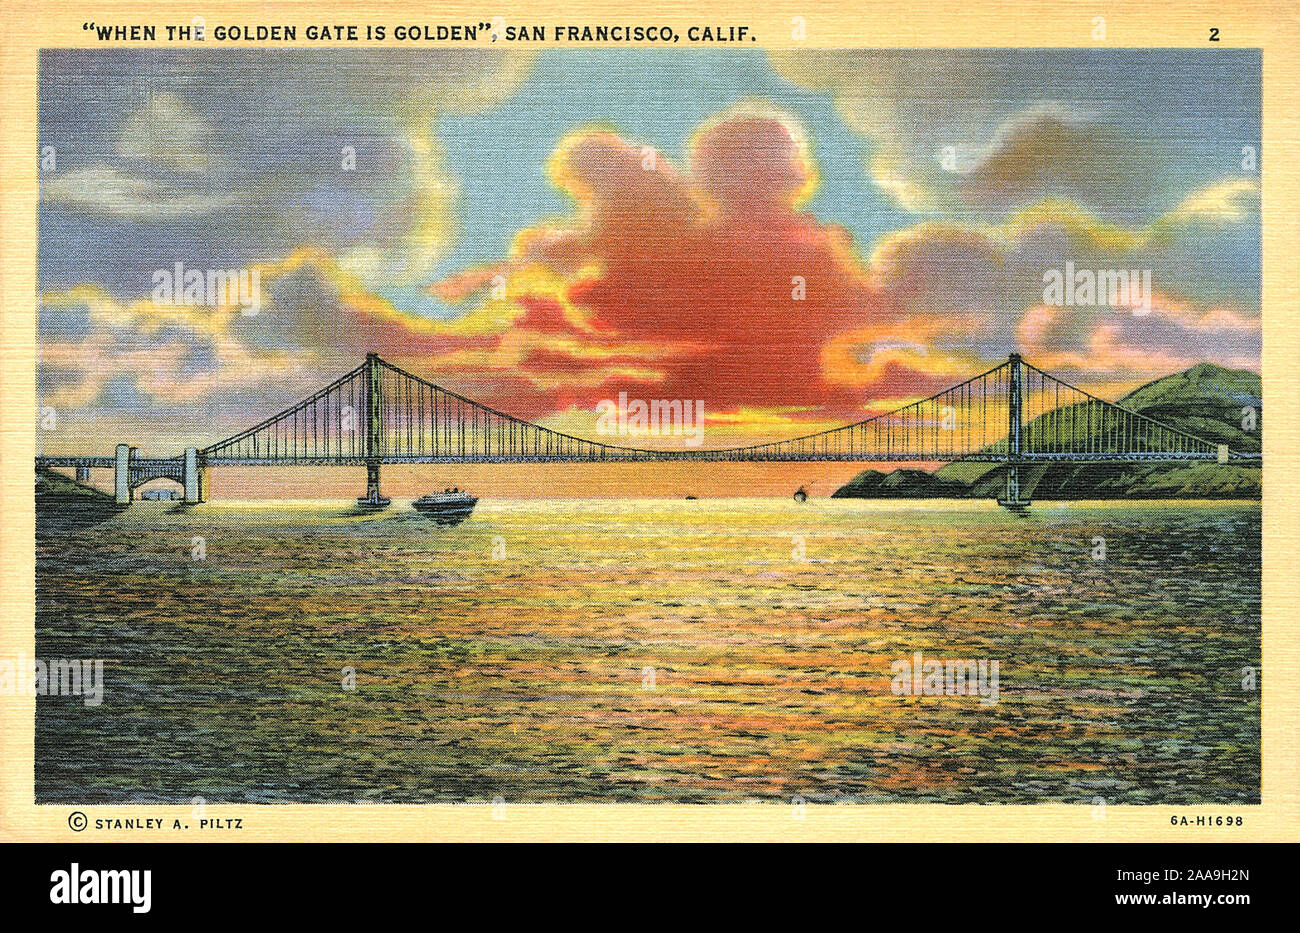 Vintage US-Postkarte von der Golden Gate Bridge in San Francisco, Kalifornien, USA Veröffentlicht von Stanley A. Piltz. Stockfoto